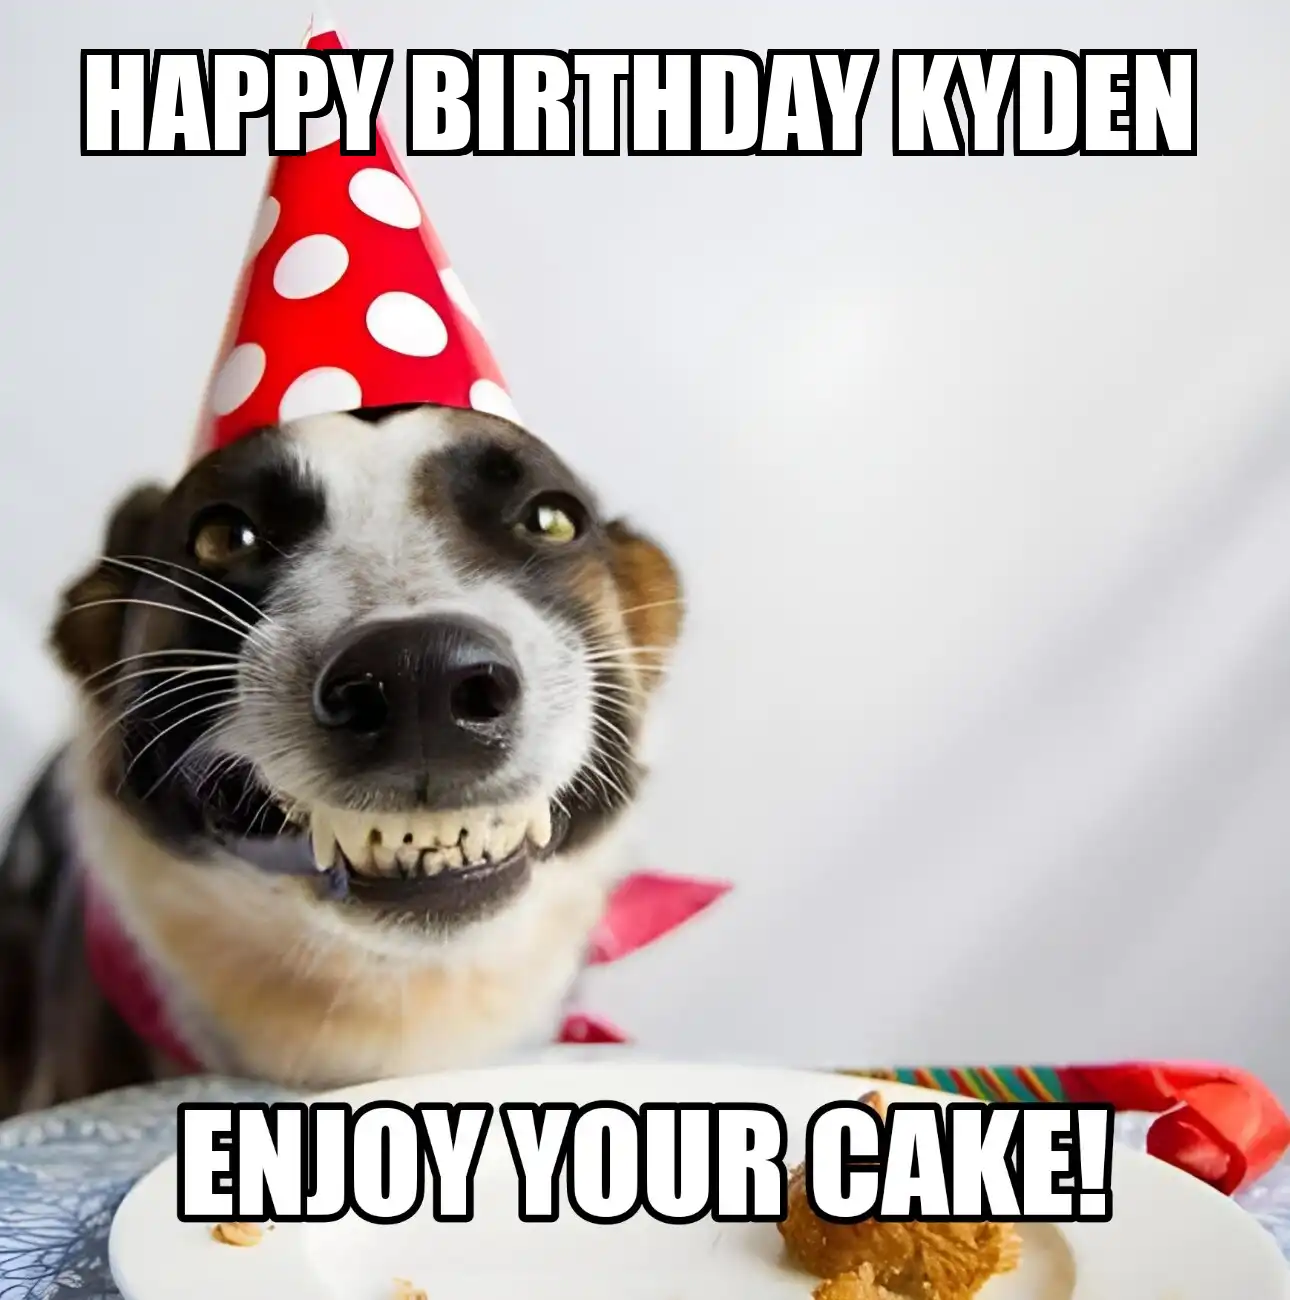 Happy Birthday Kyden Enjoy Your Cake Dog Meme